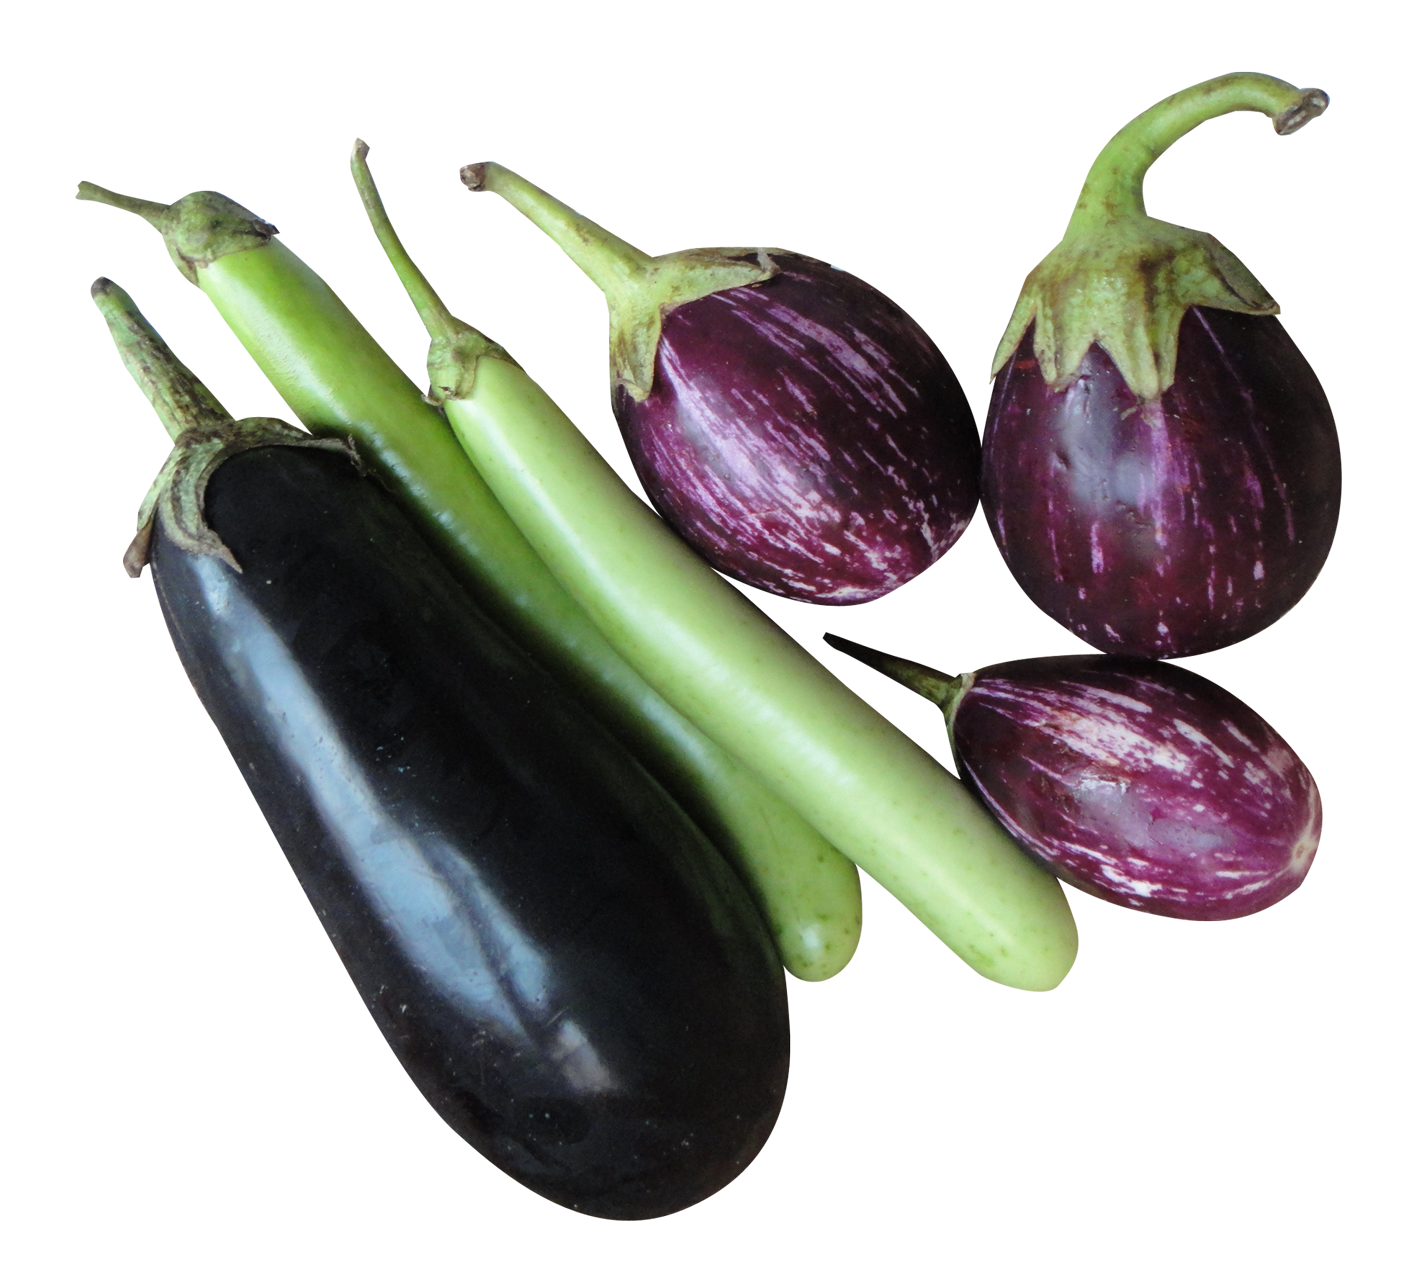 brinjal eggplant png image for free download brinjal eggplant png image for free